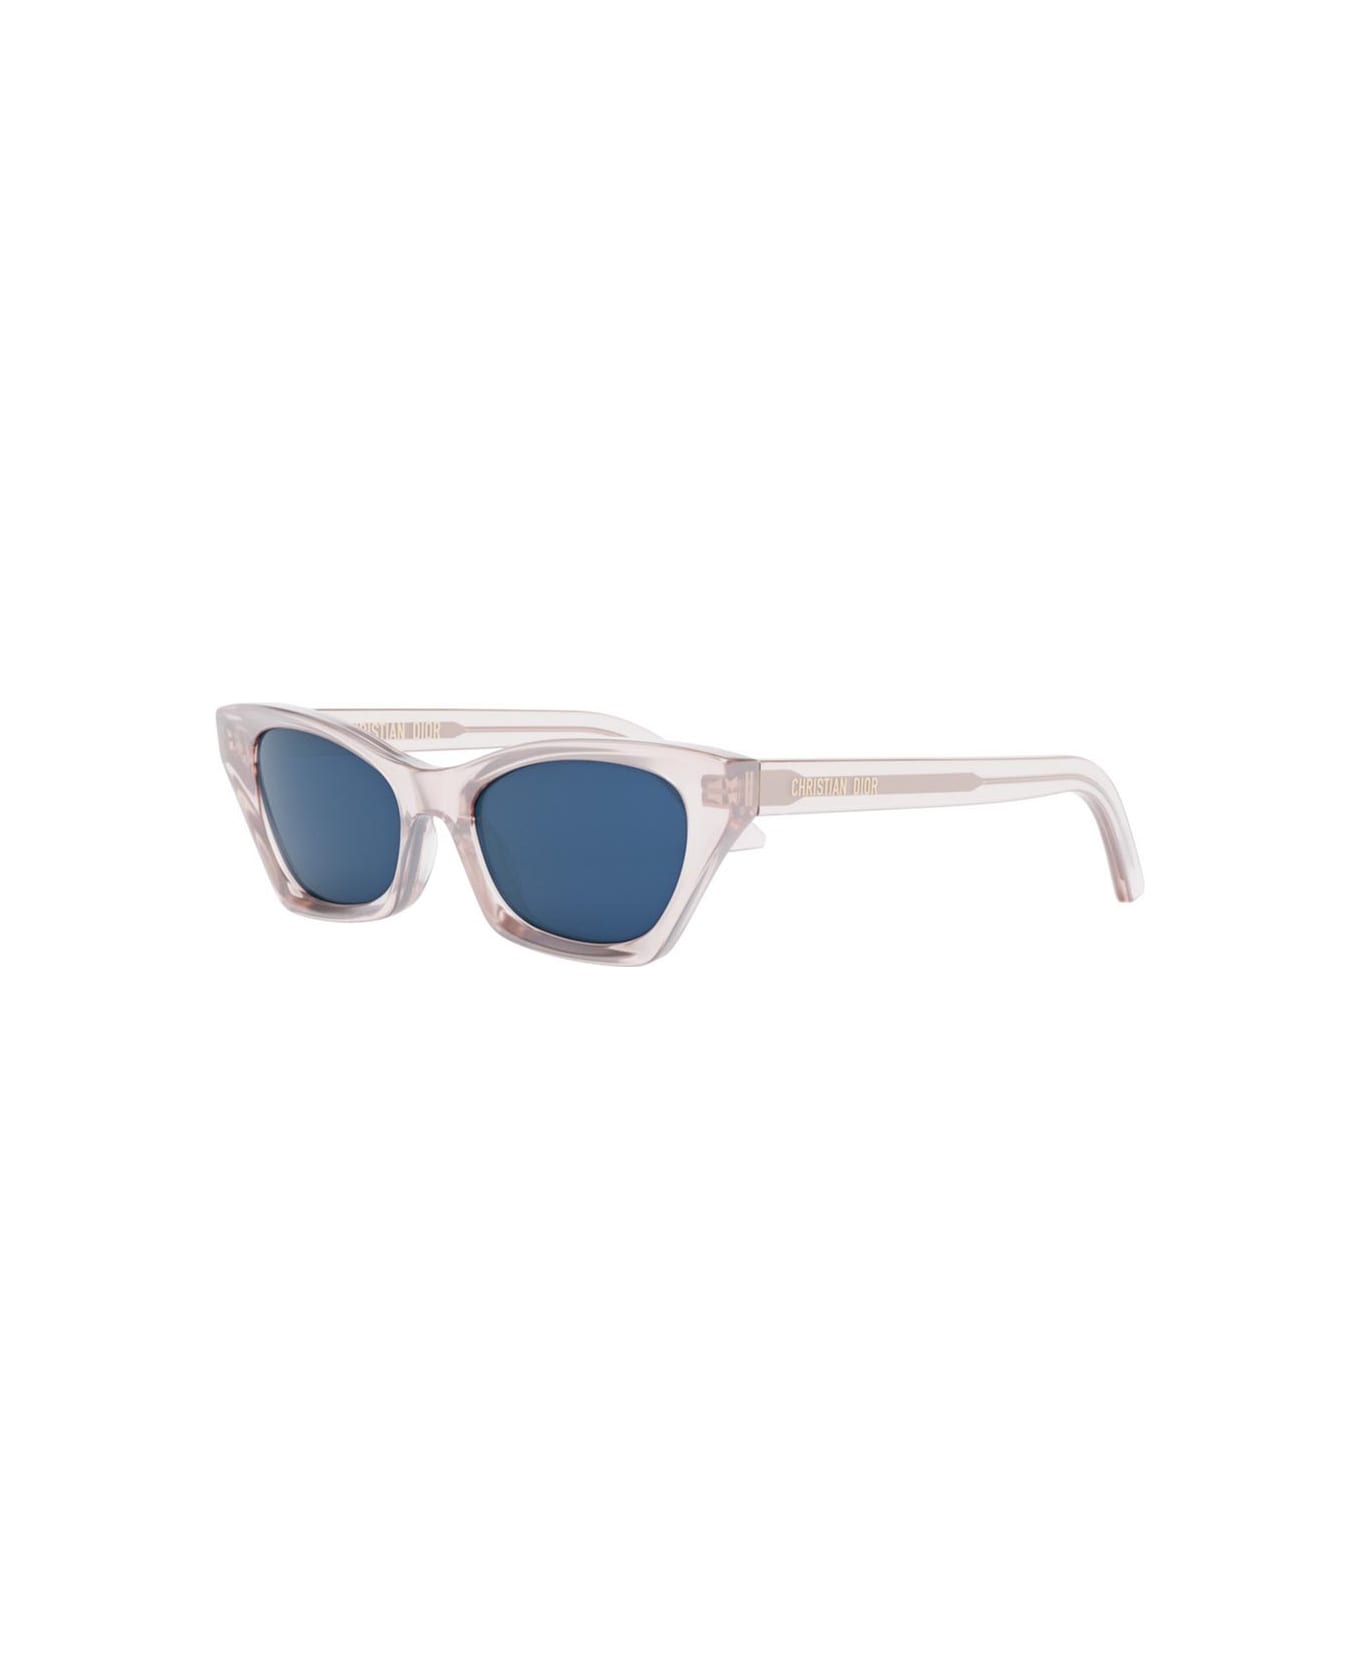 Dior Eyewear Sunglasses - Rosa/Grigio サングラス